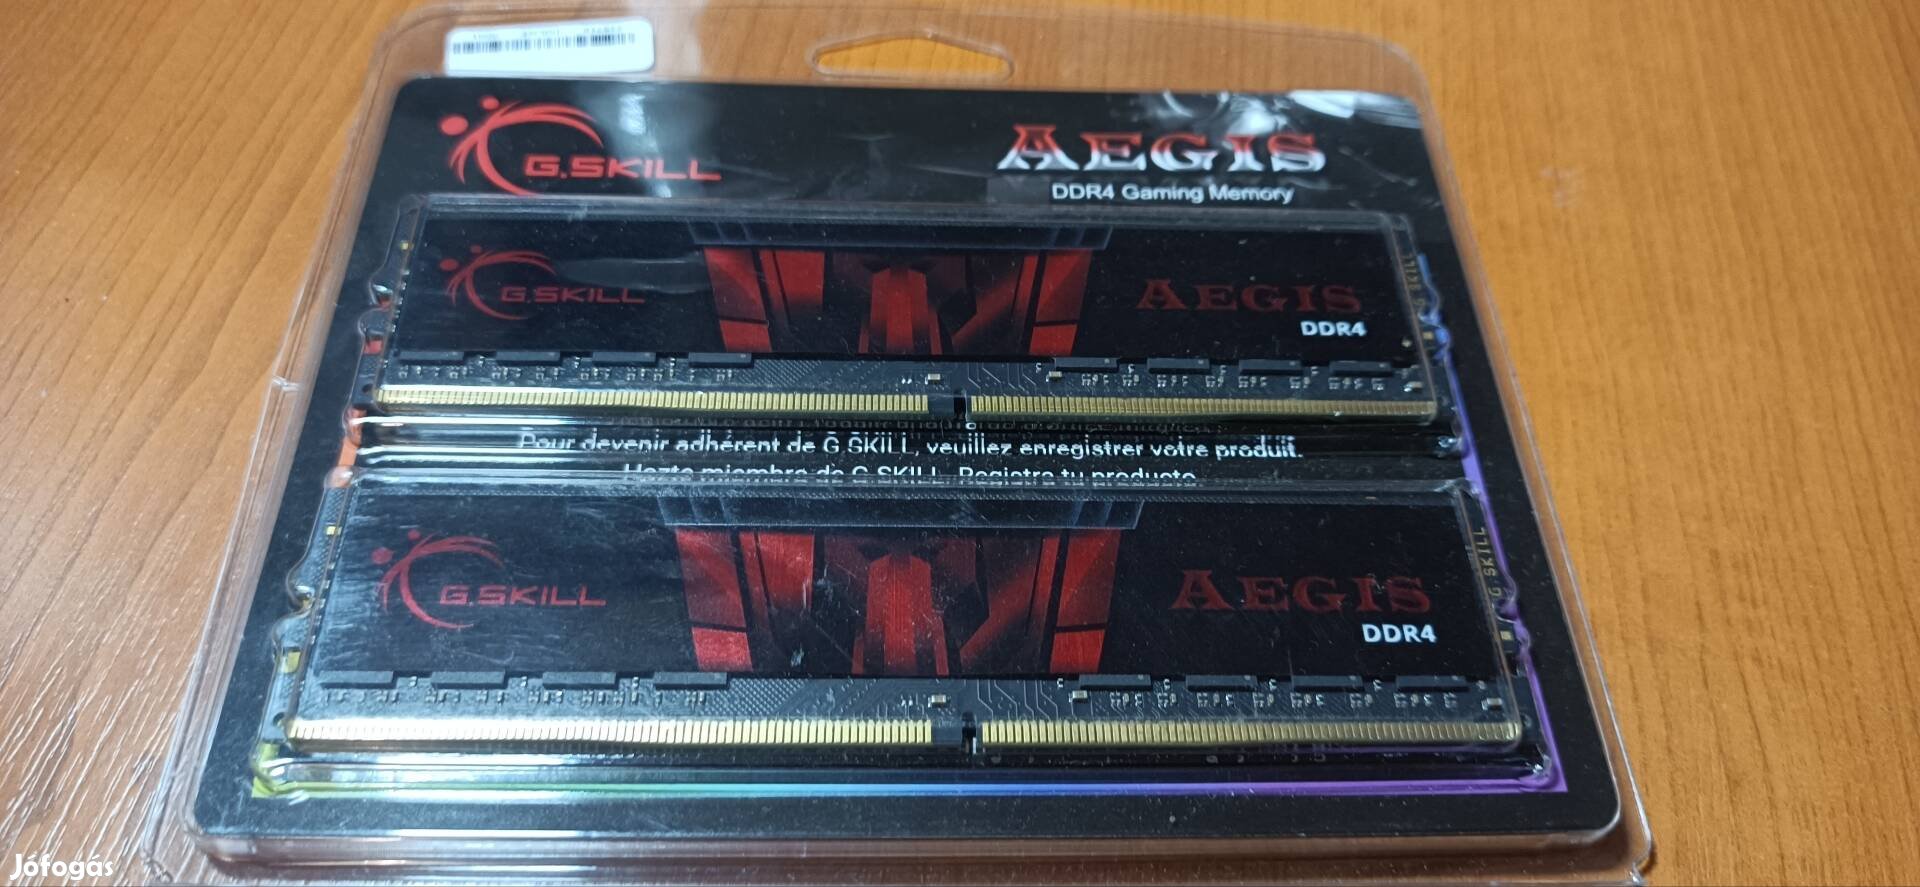 G.Skill Aegis DDR4 2400MHz memória 8GB (2x4 GB Dual Channel)